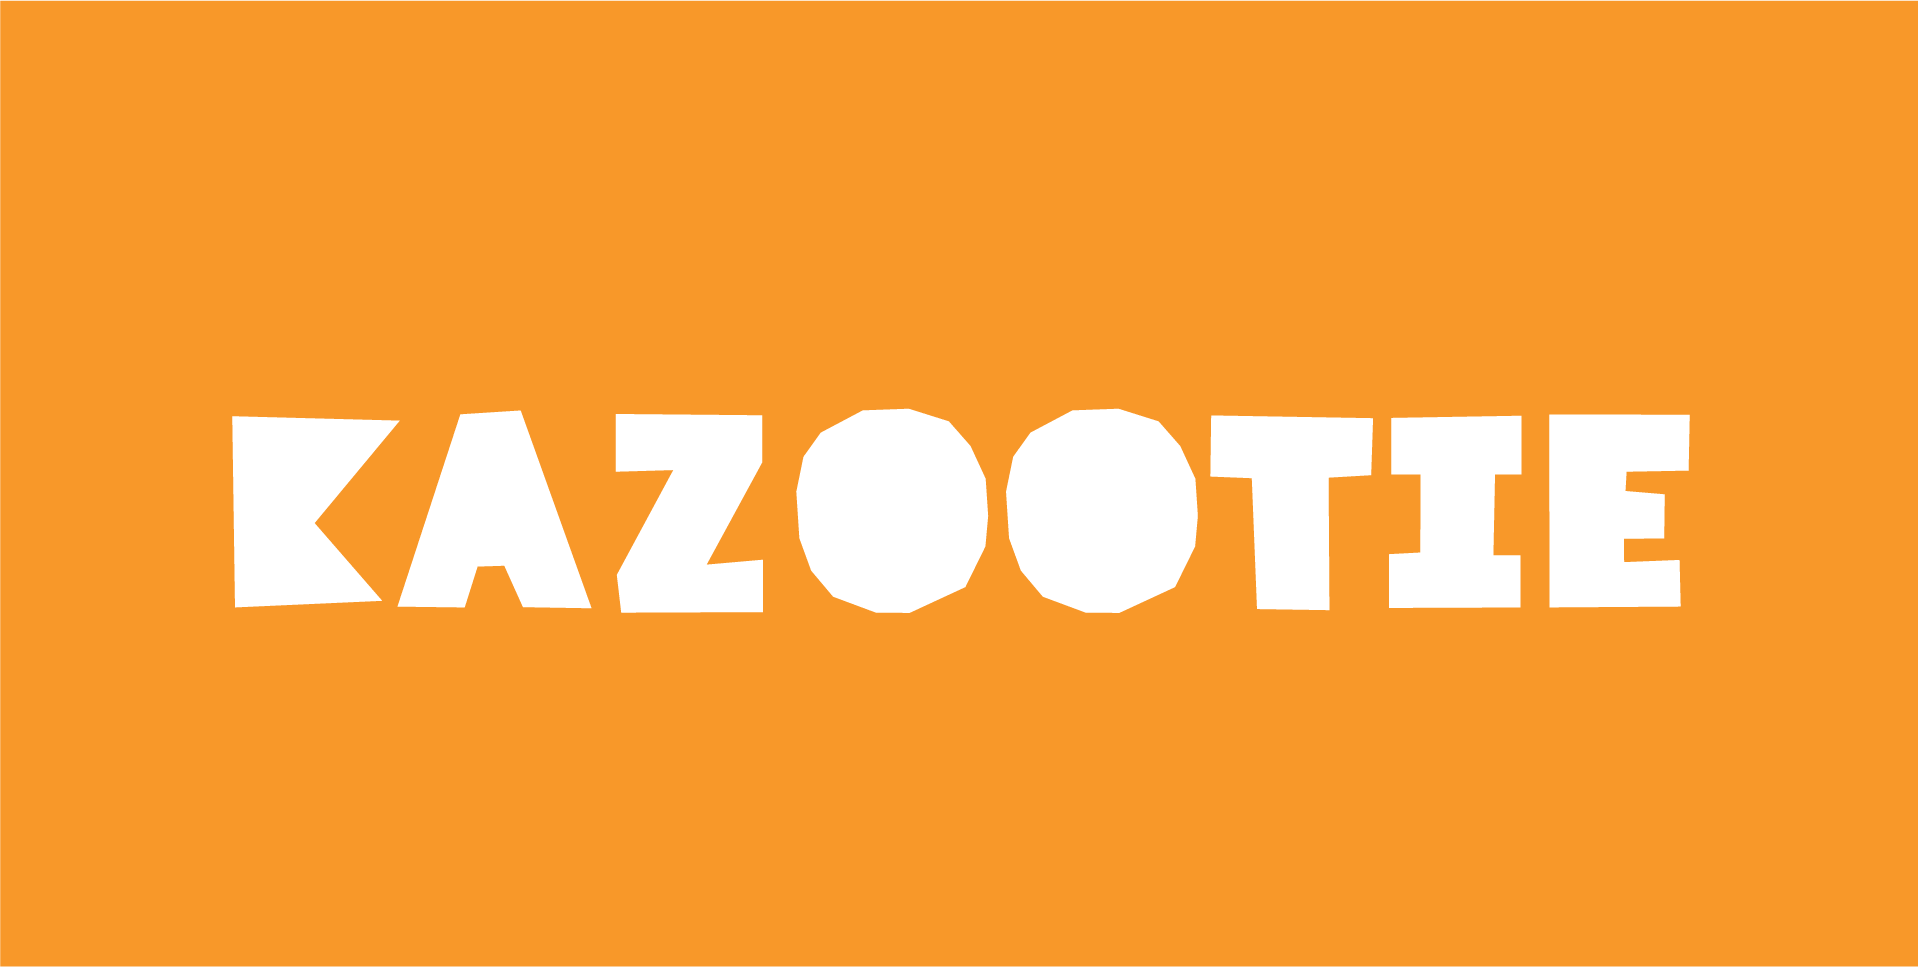 Kazootie